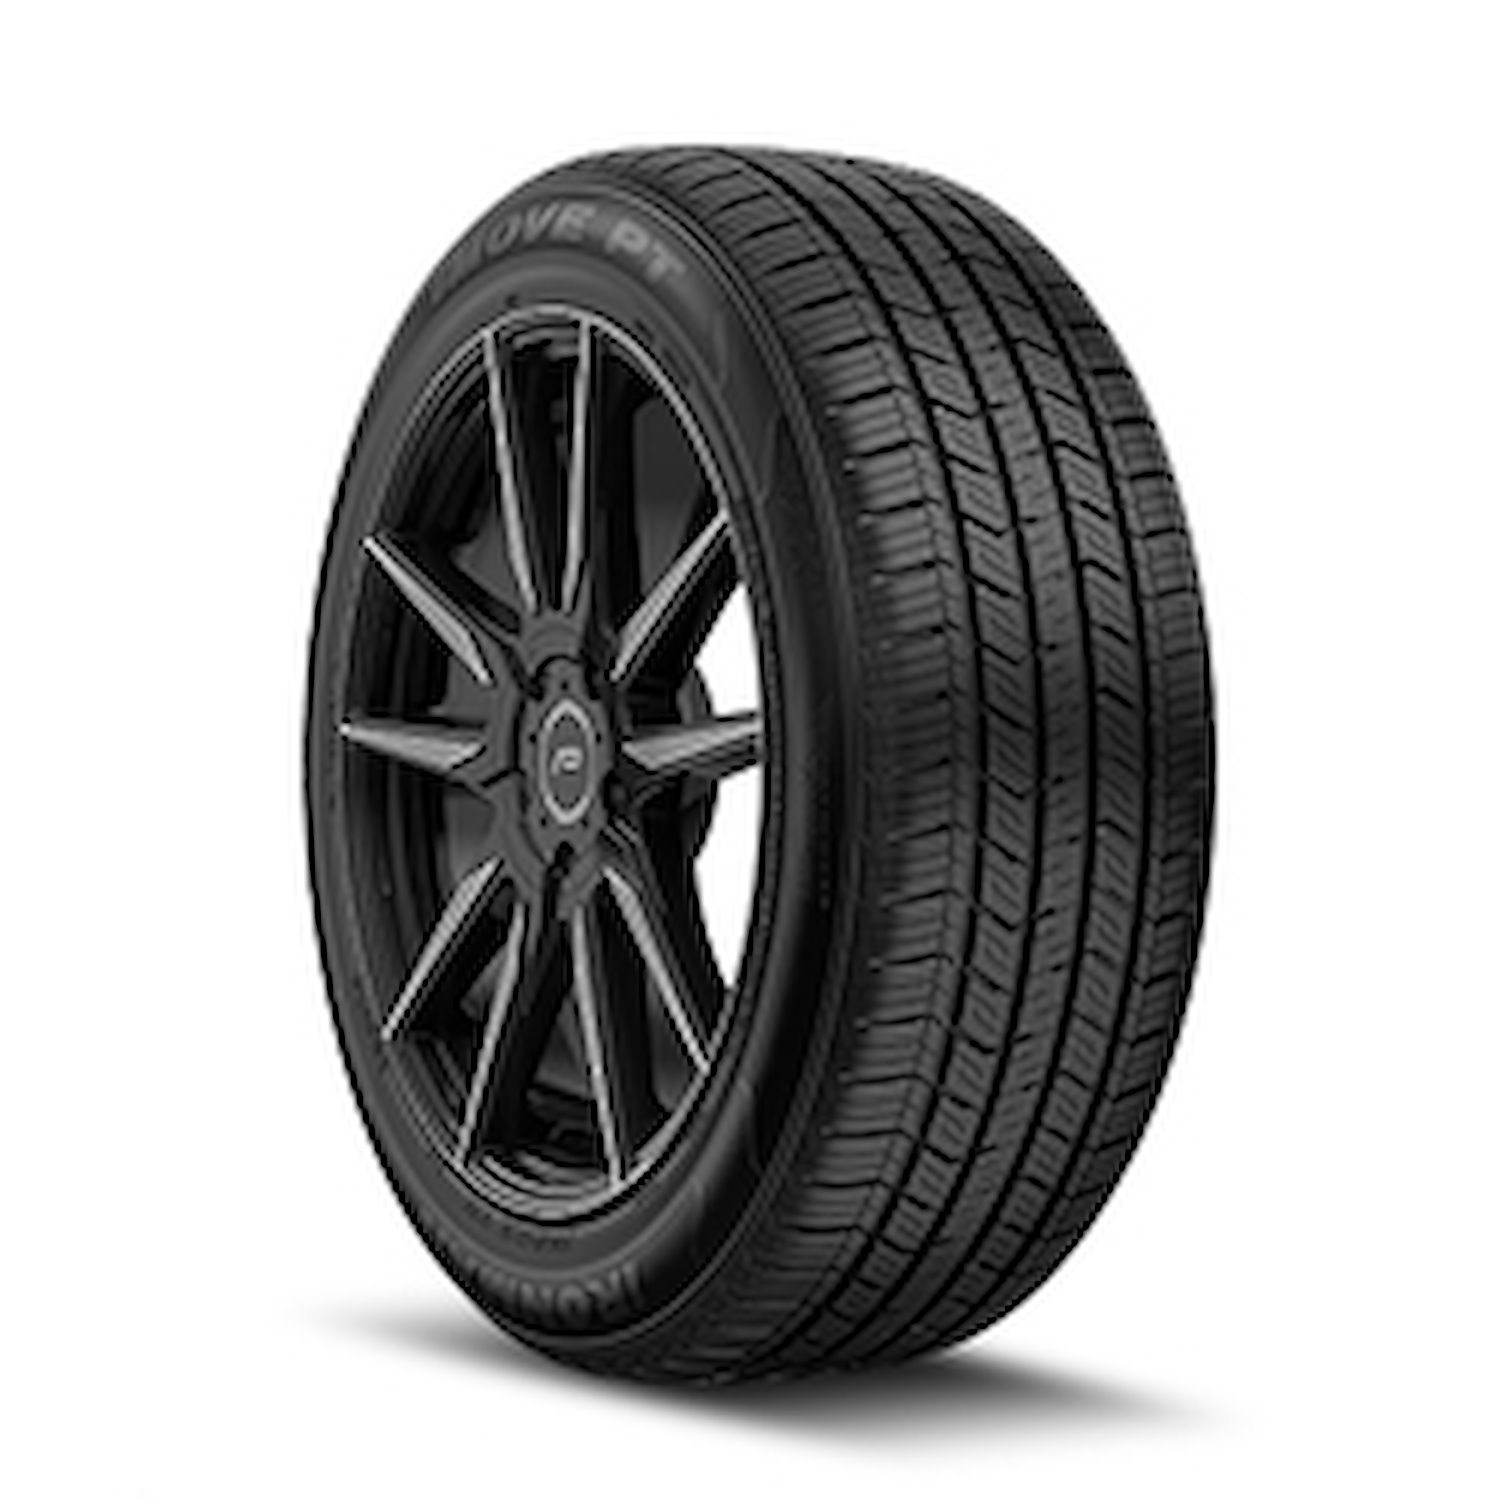 98474 iMOVE PT Tire, 225/60R17, 99H